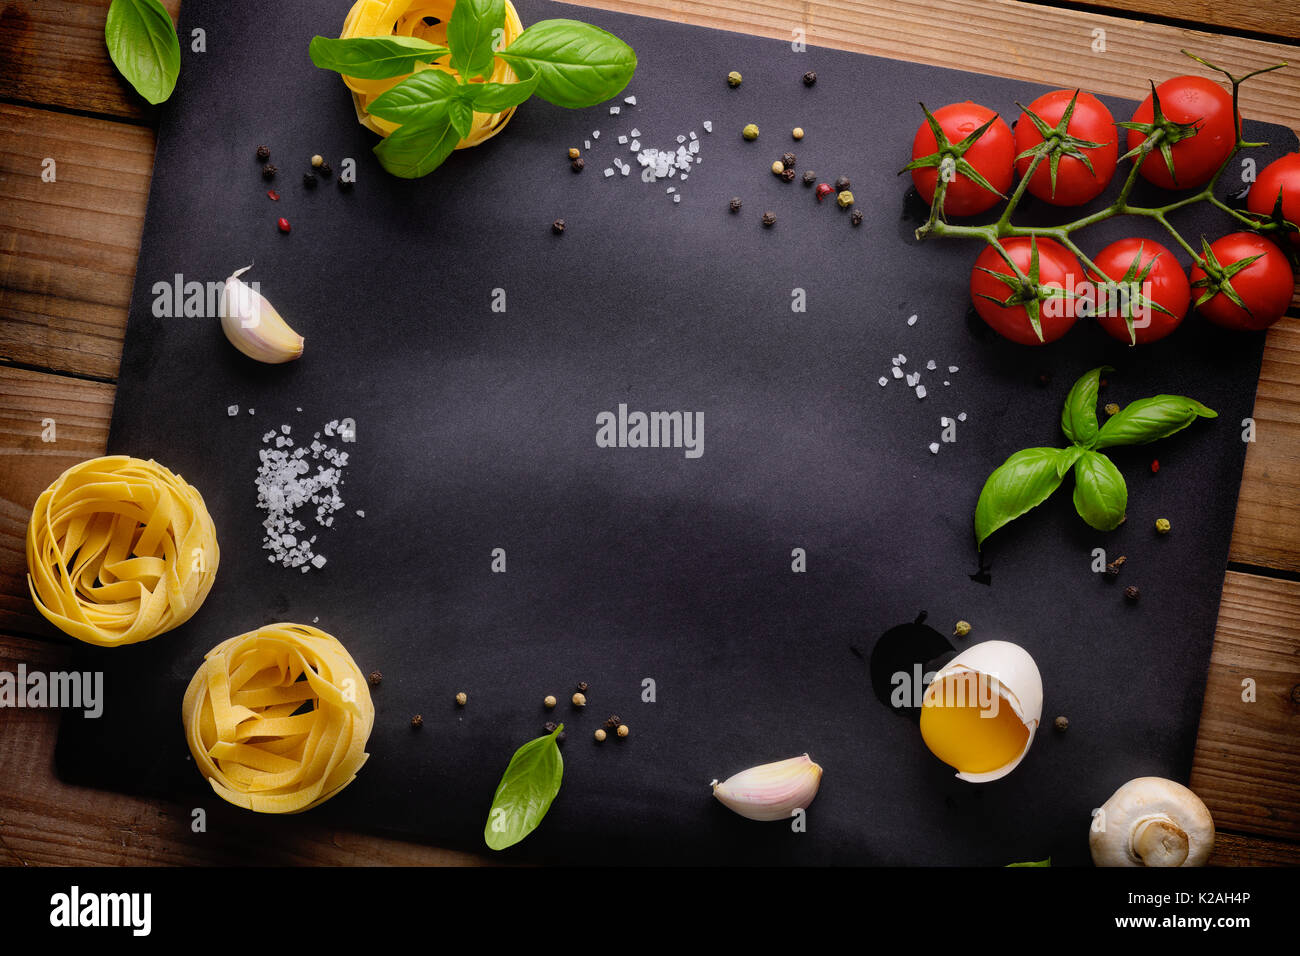 Italienische Lebensmittel oder Zutaten Hintergrund mit frischem Gemüse, Teigwaren, Eier und Gewürze. Ansicht von oben Stockfoto